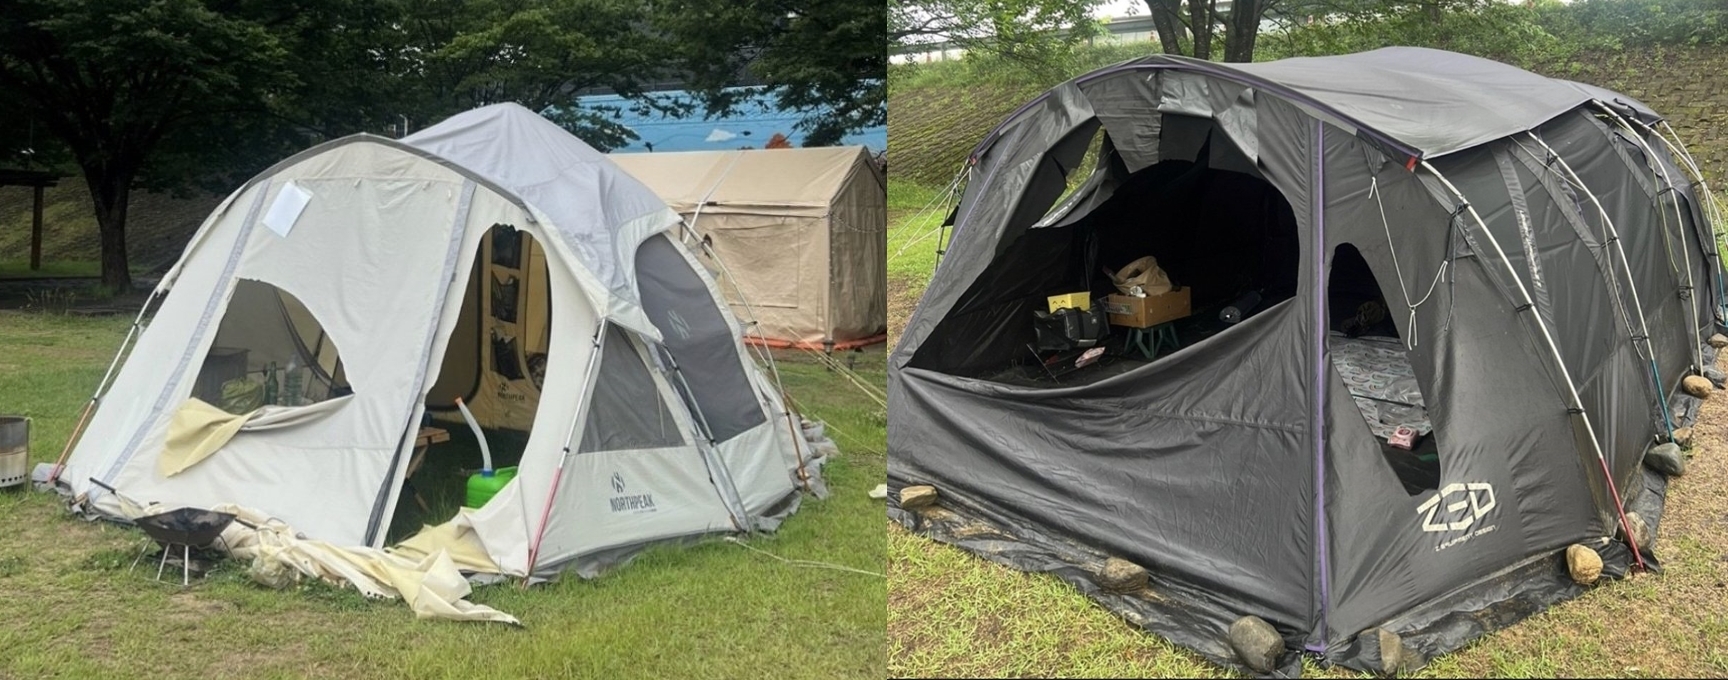 운문댐 근처 캠핑장에 설치돼 있던 텐트가 훼손된 모습. 온라인 커뮤니티 캡처.